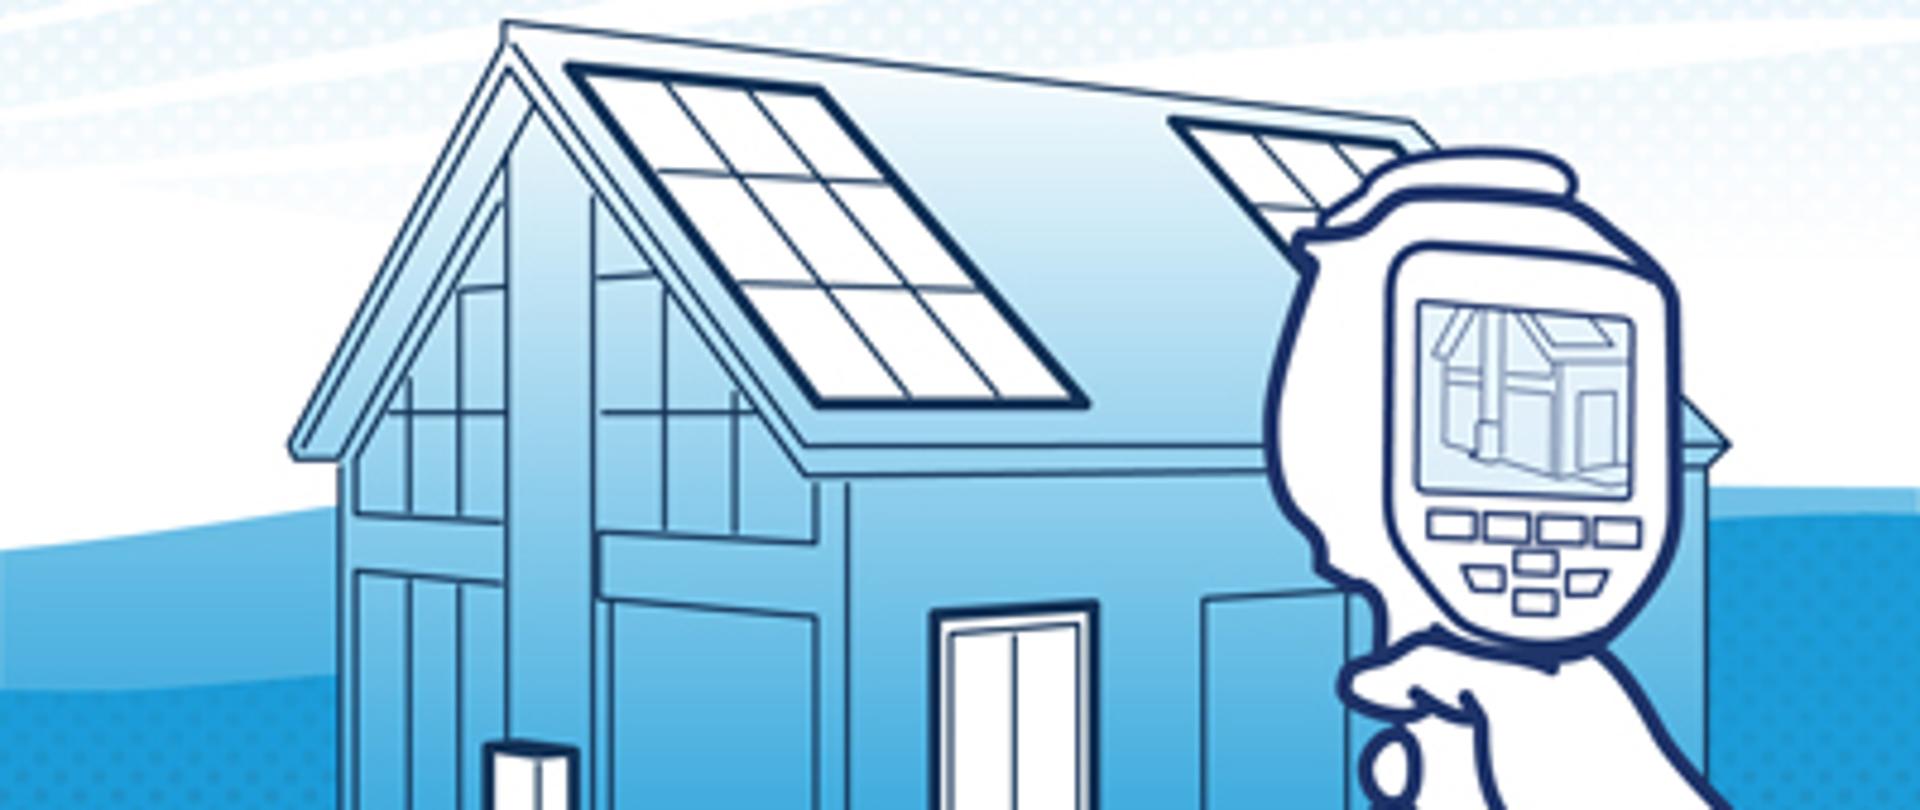 zdjęcie w niebieskiej kolorystyce, przedstawia dom na dachu którego znajdują się panele fotowoltaiczne 